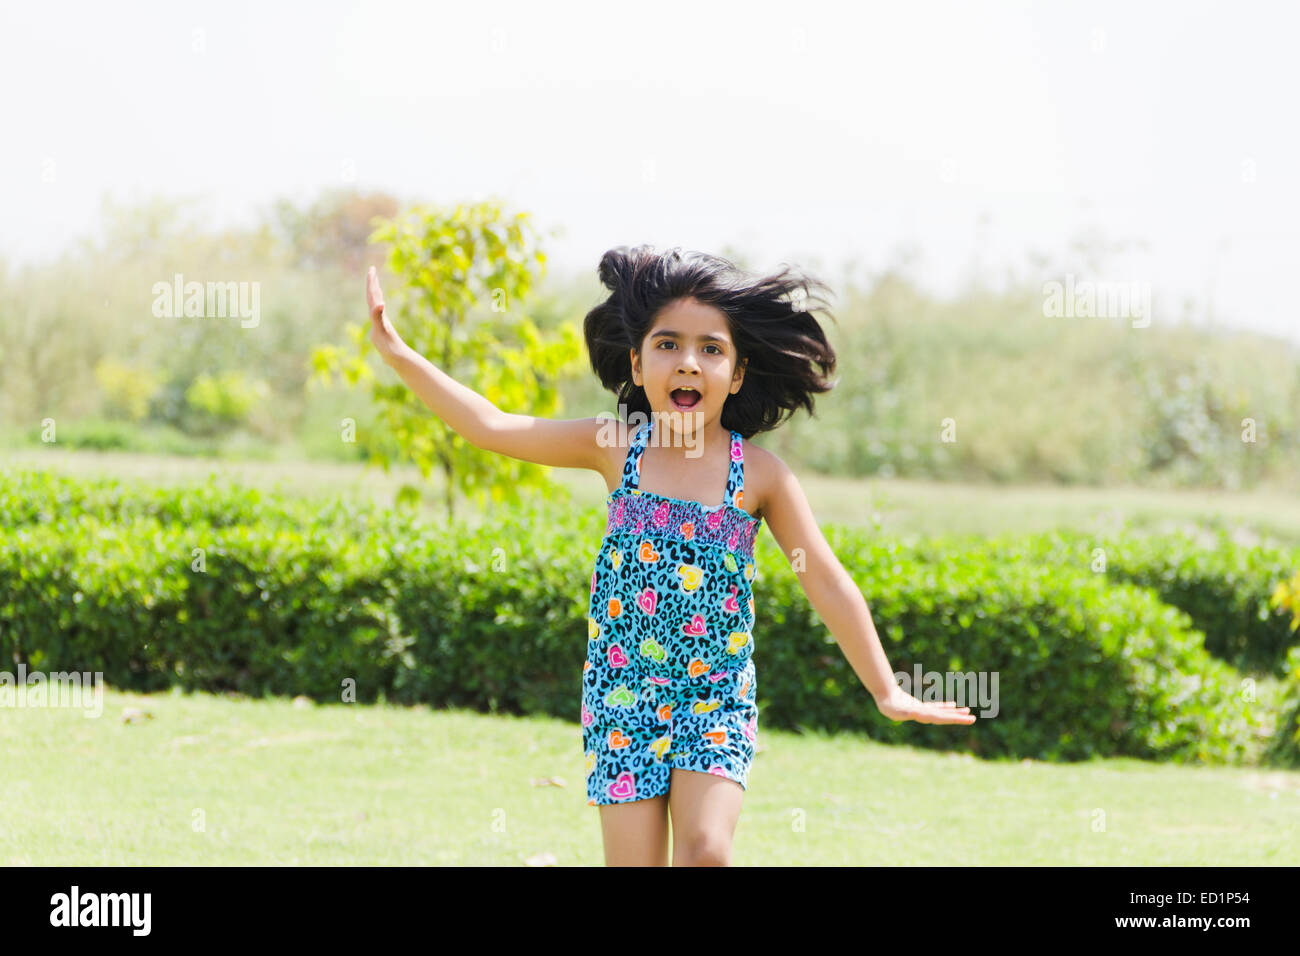 1 Indianer schönes Kind Mädchen Park Spaß Stockfoto